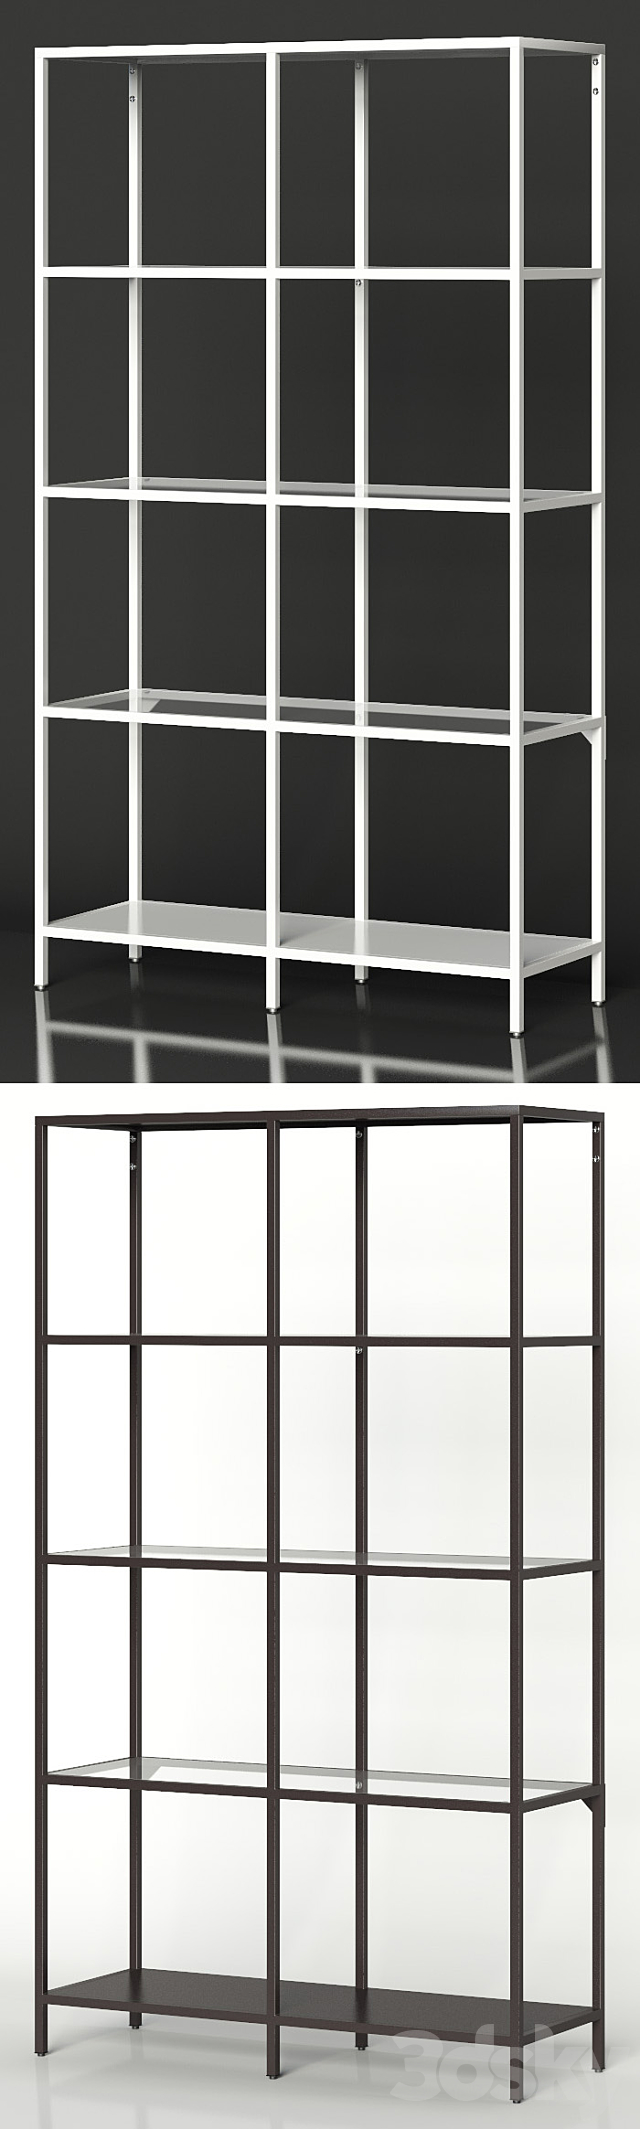 IKEA VITTSJO Shelf unit medium 3DSMax File - thumbnail 2